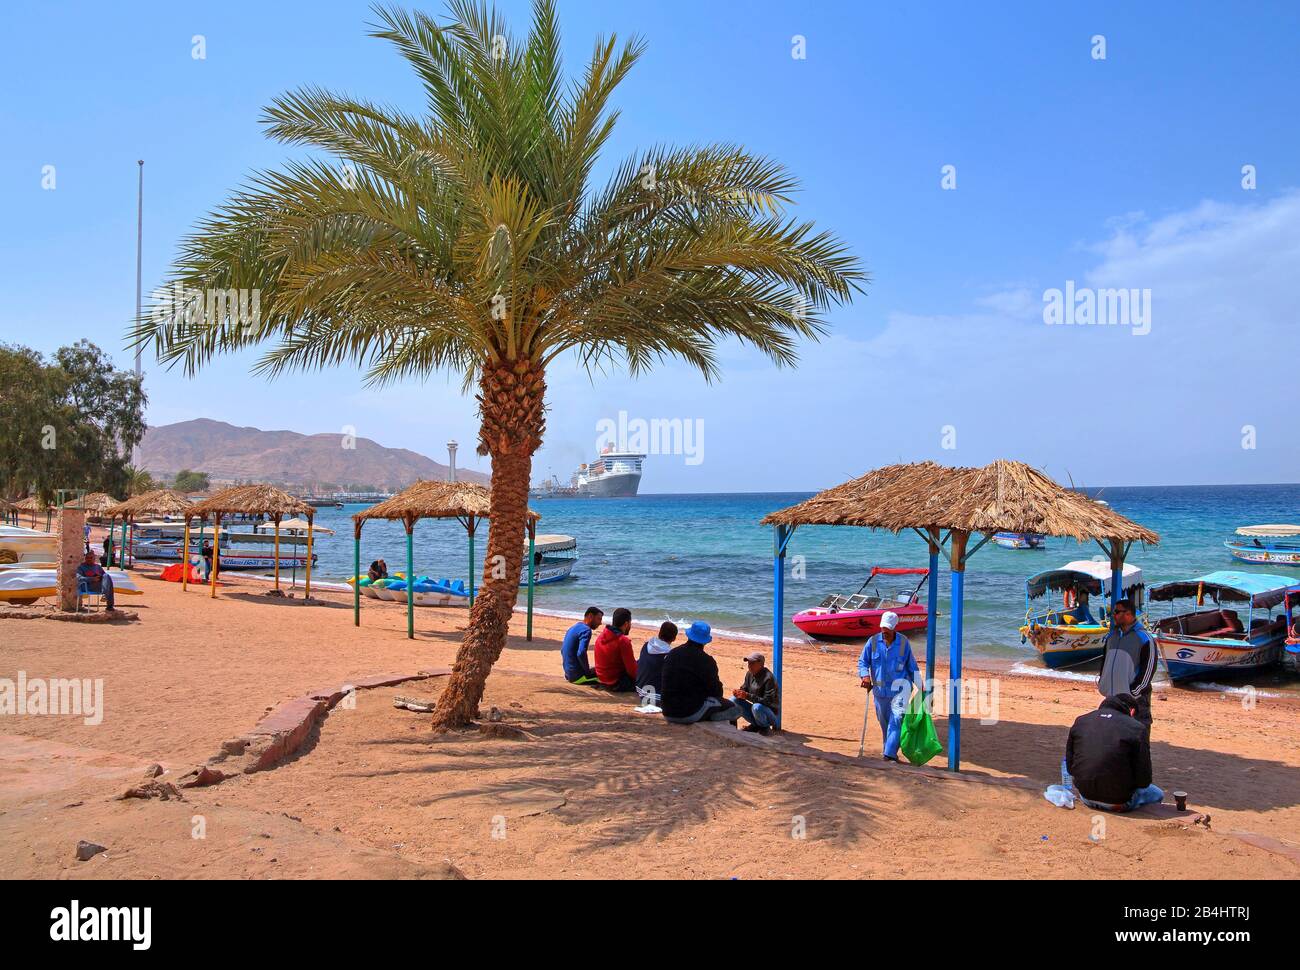 Les habitants de la plage de la ville avec des bateaux d'excursion et vue sur le port d'Akaba Aqaba, le golfe d'Aqaba, la mer Rouge, la Jordanie Banque D'Images